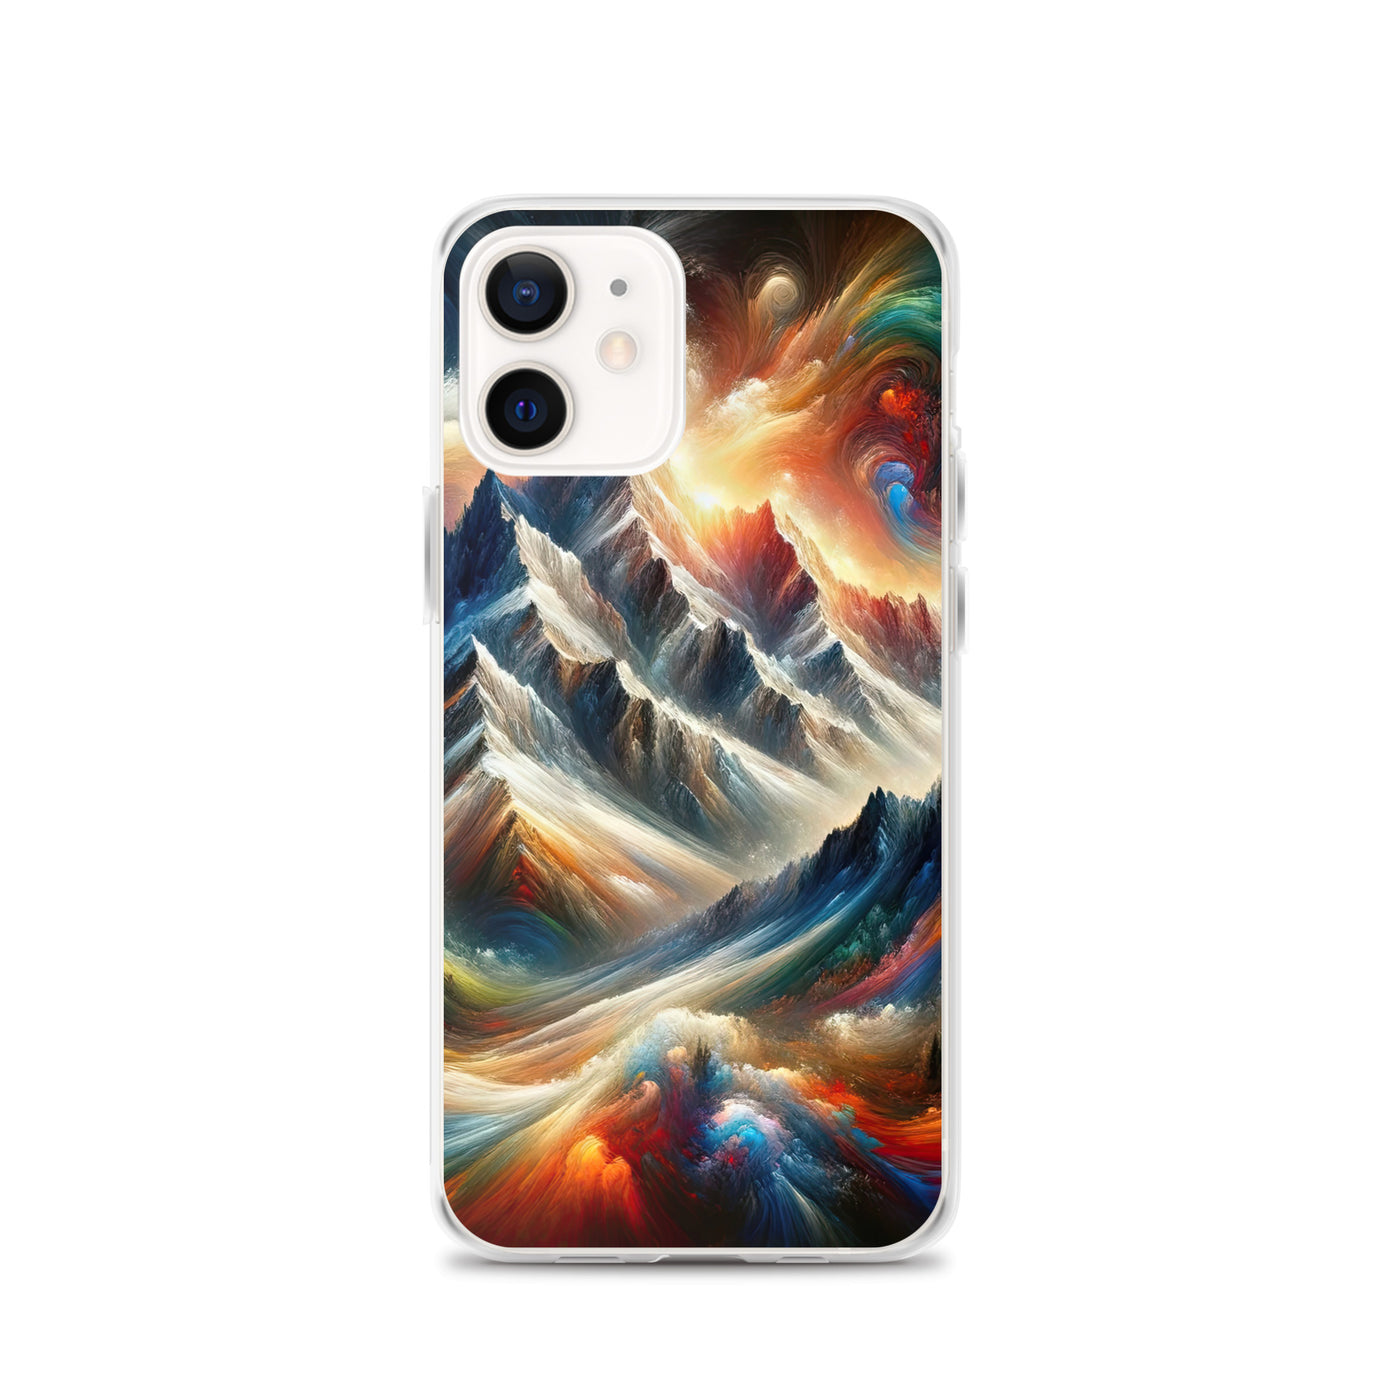 Expressionistische Alpen, Berge: Gemälde mit Farbexplosion - iPhone Schutzhülle (durchsichtig) berge xxx yyy zzz iPhone 12